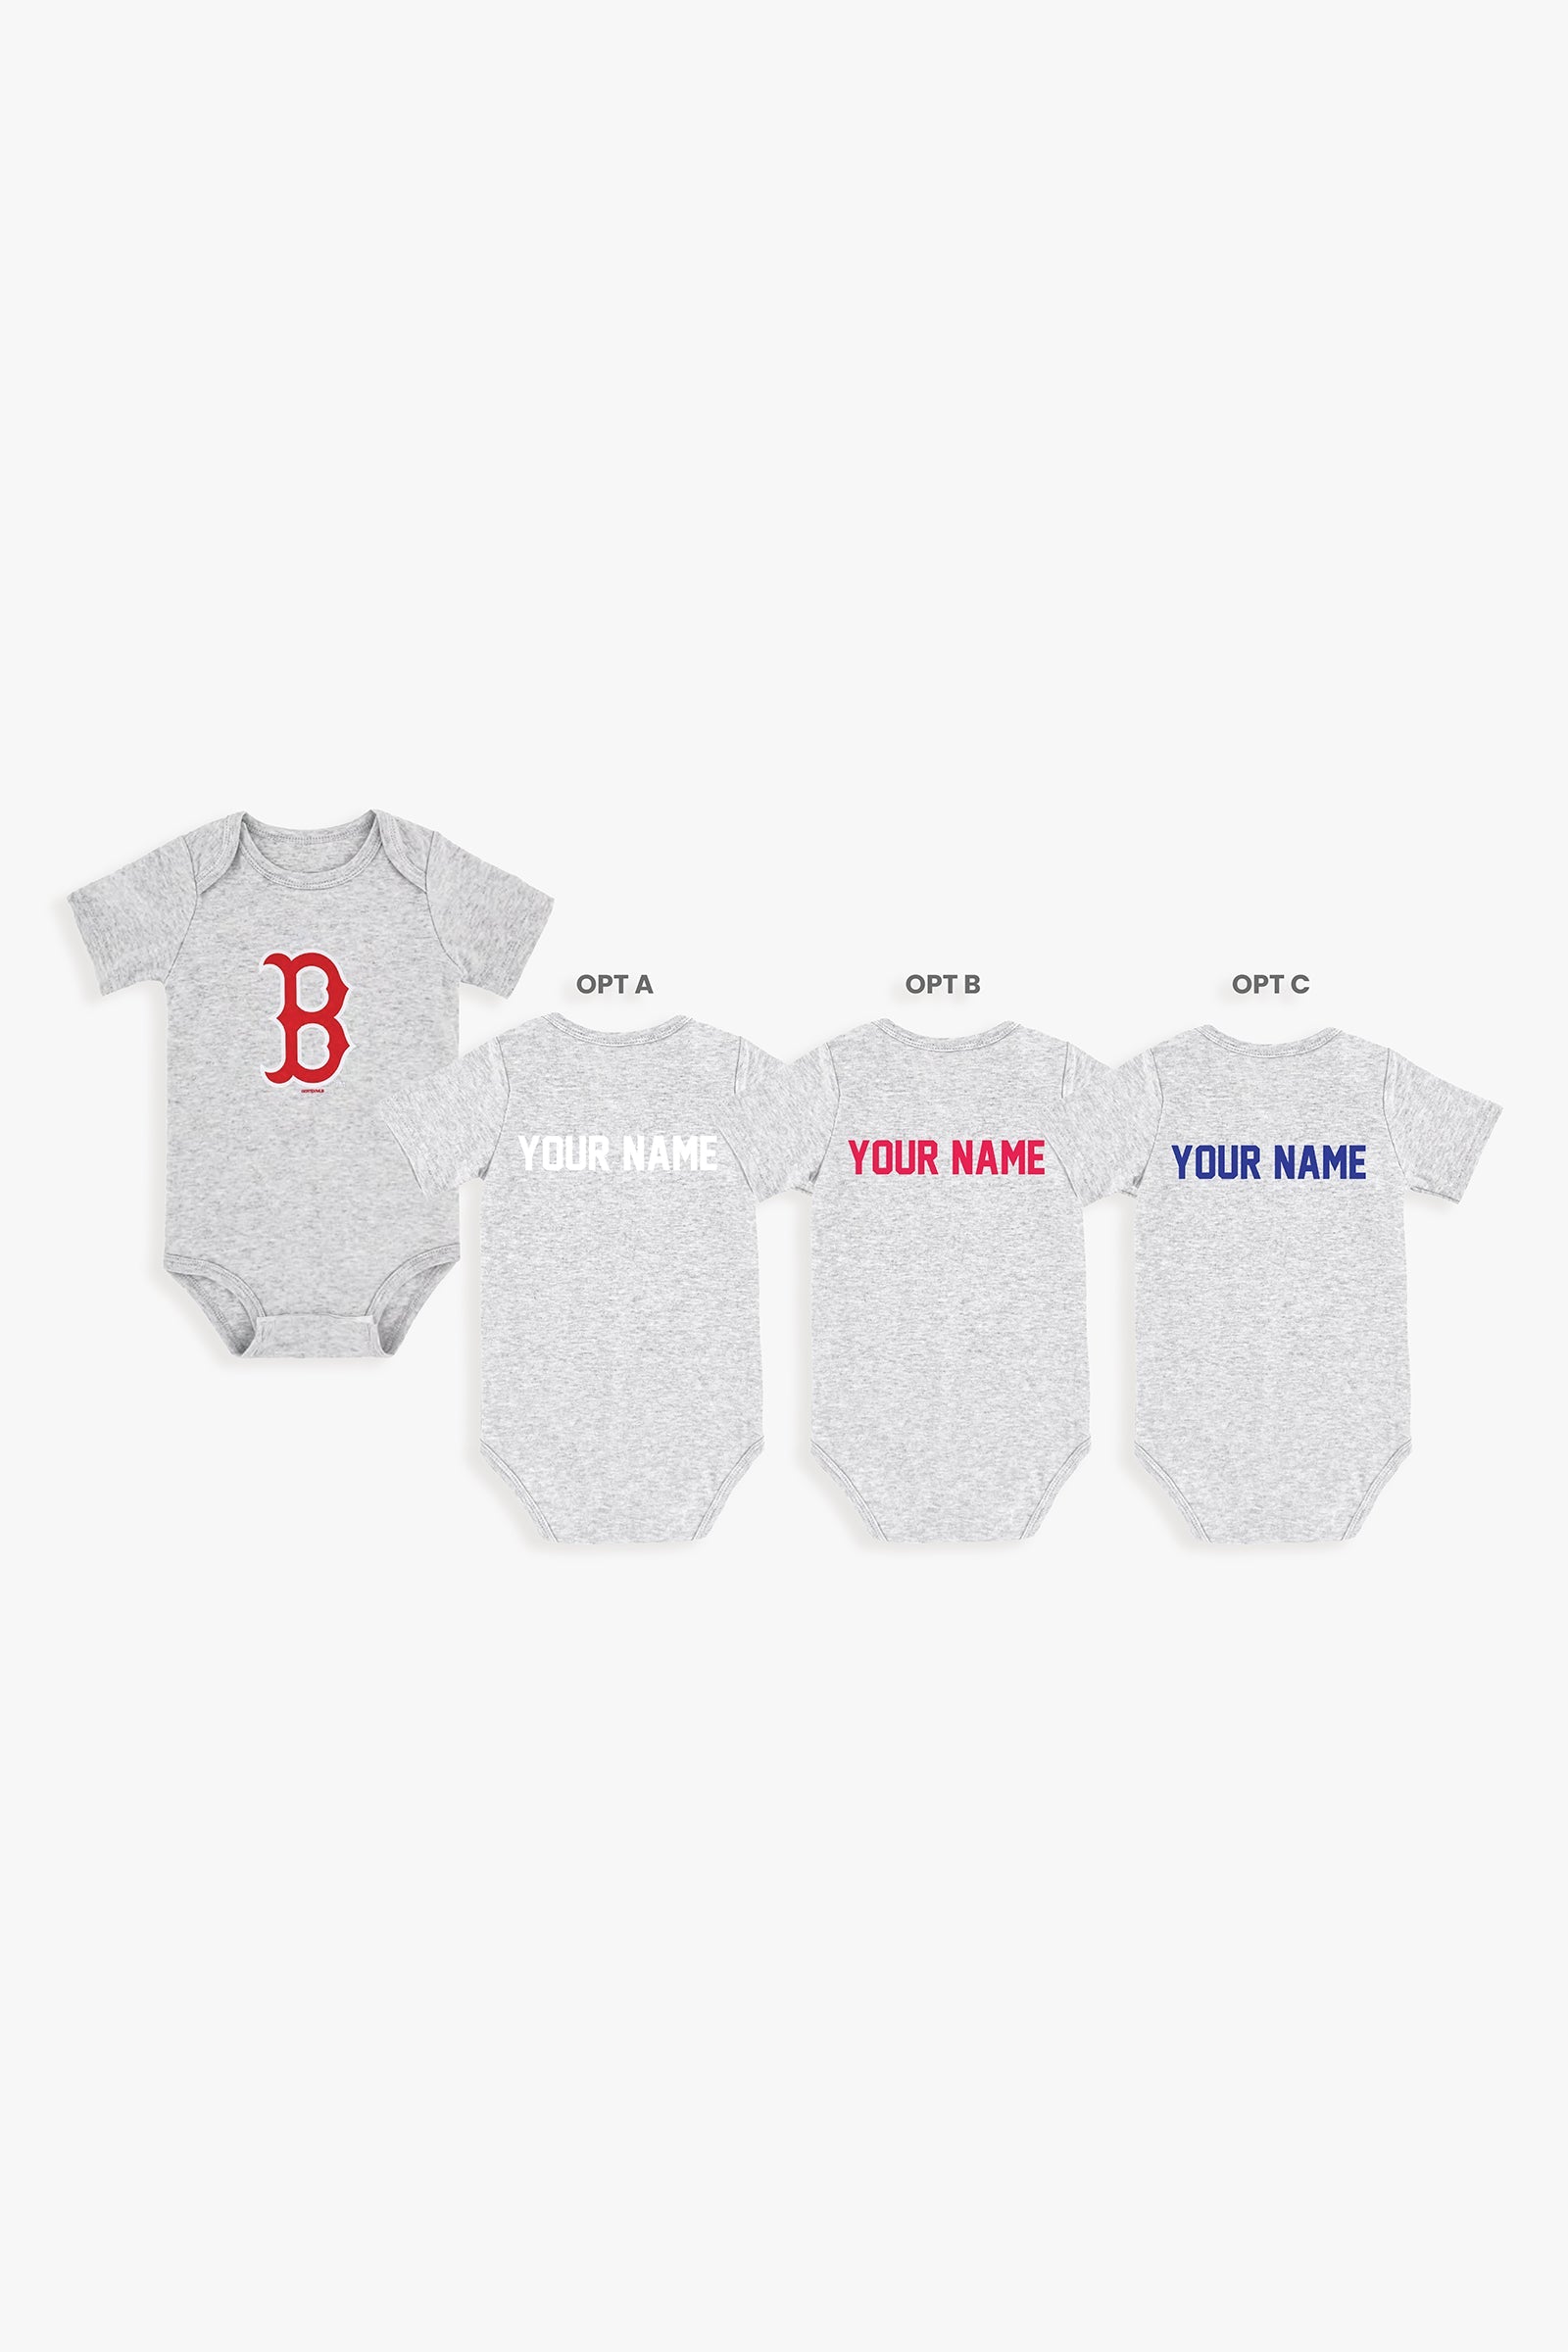 Gertex Customizable MLB Baby Onesie Bodysuit in Grey (3-6 Months)